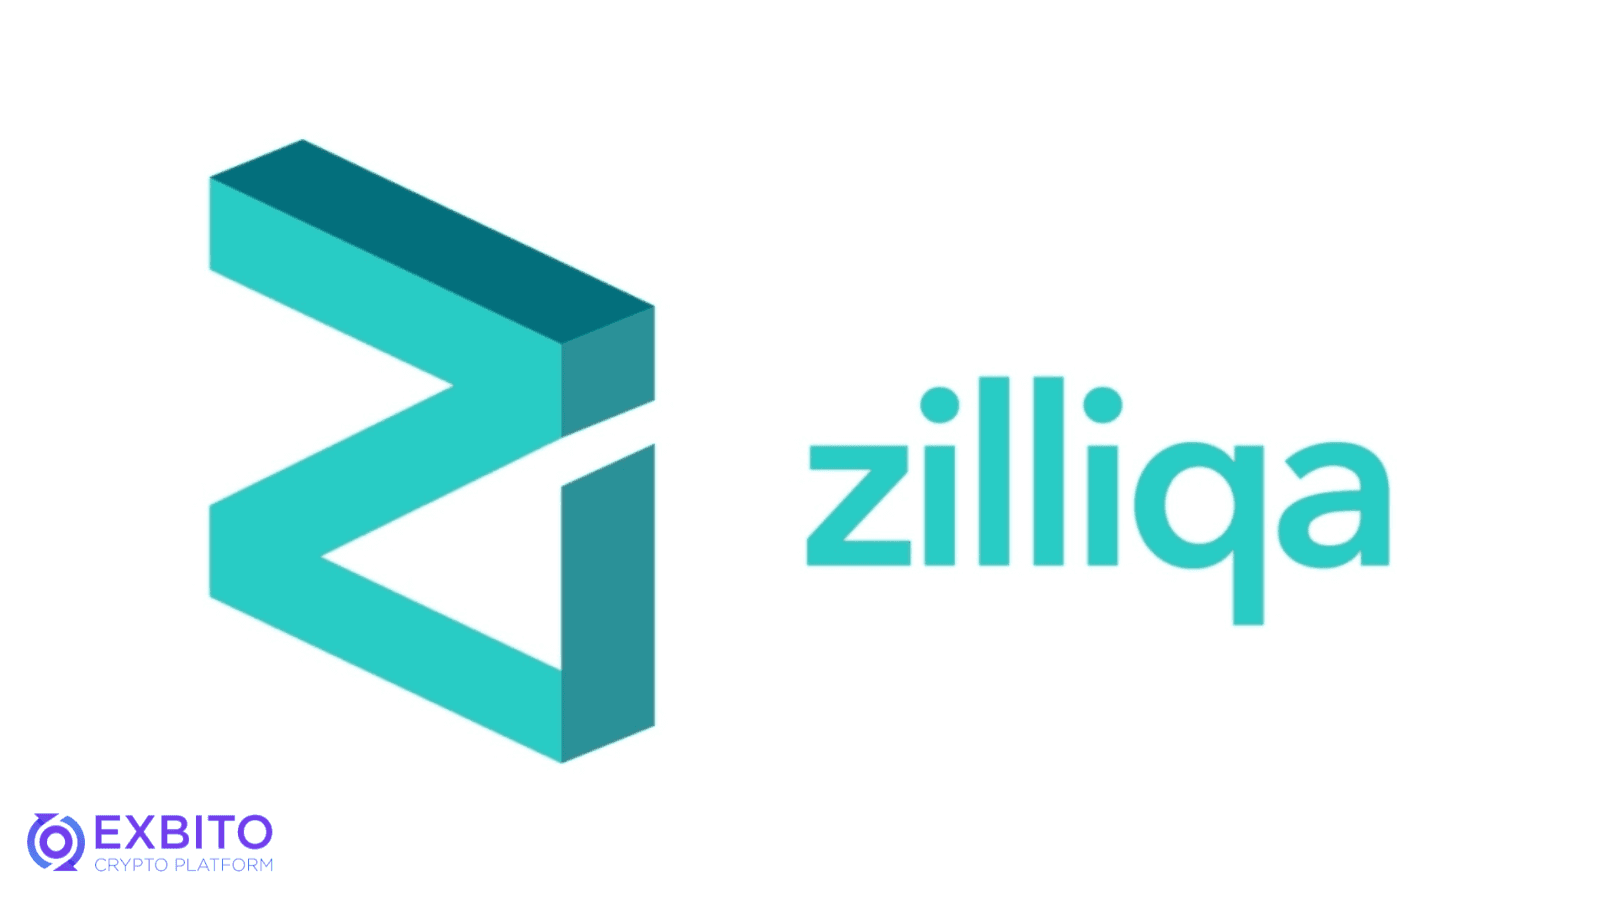 لایه شبکه زیلیکا (Zillica Network Layer)